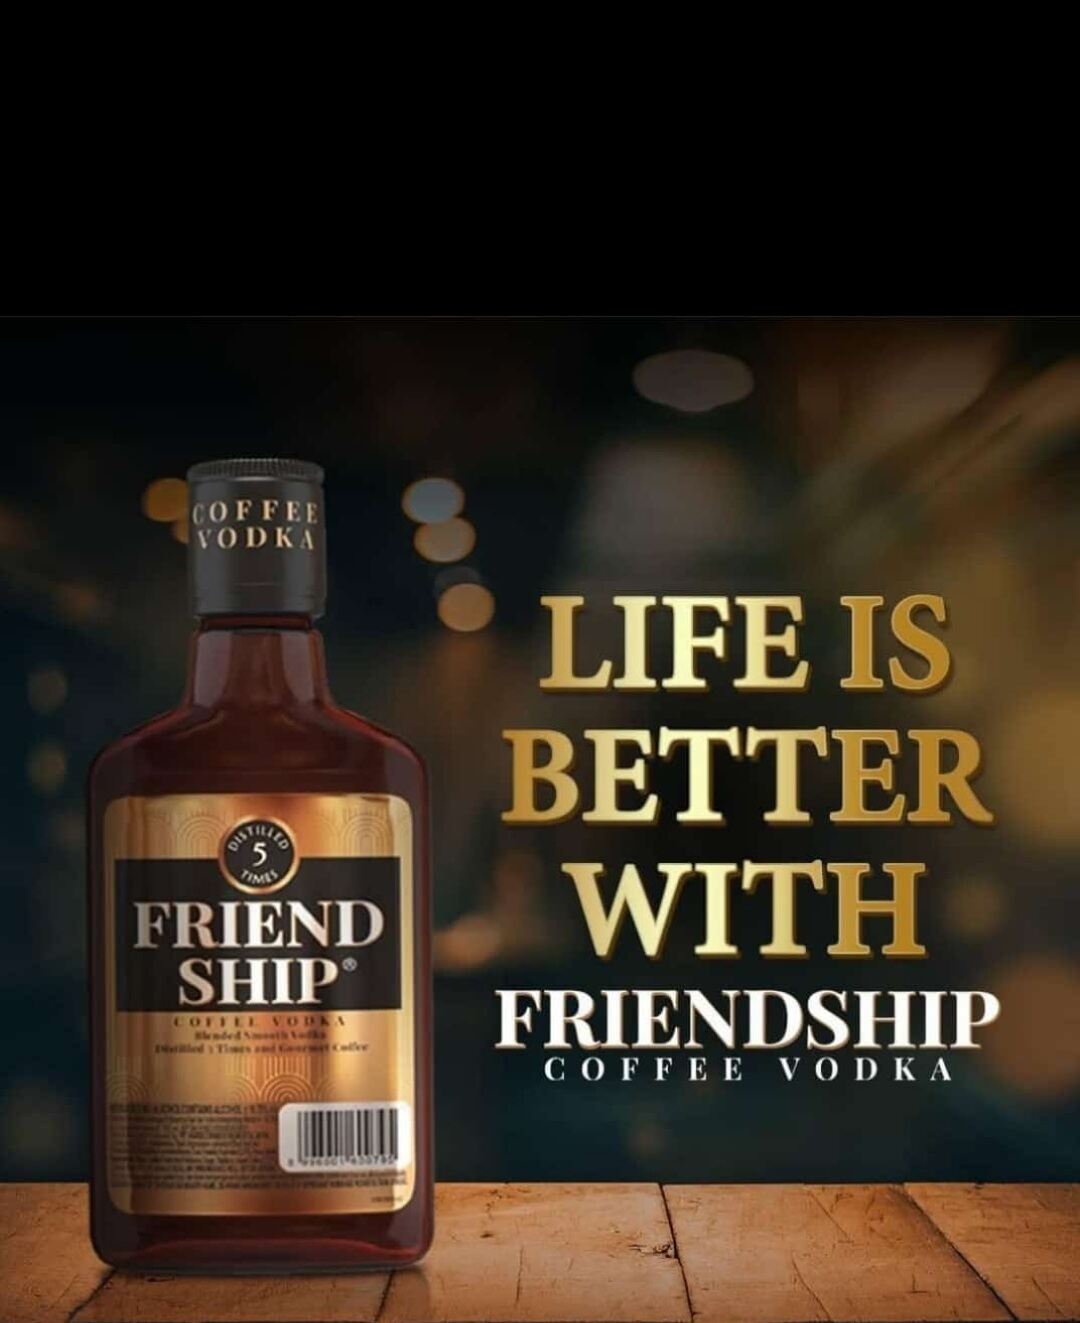 Friendship coffee vodka